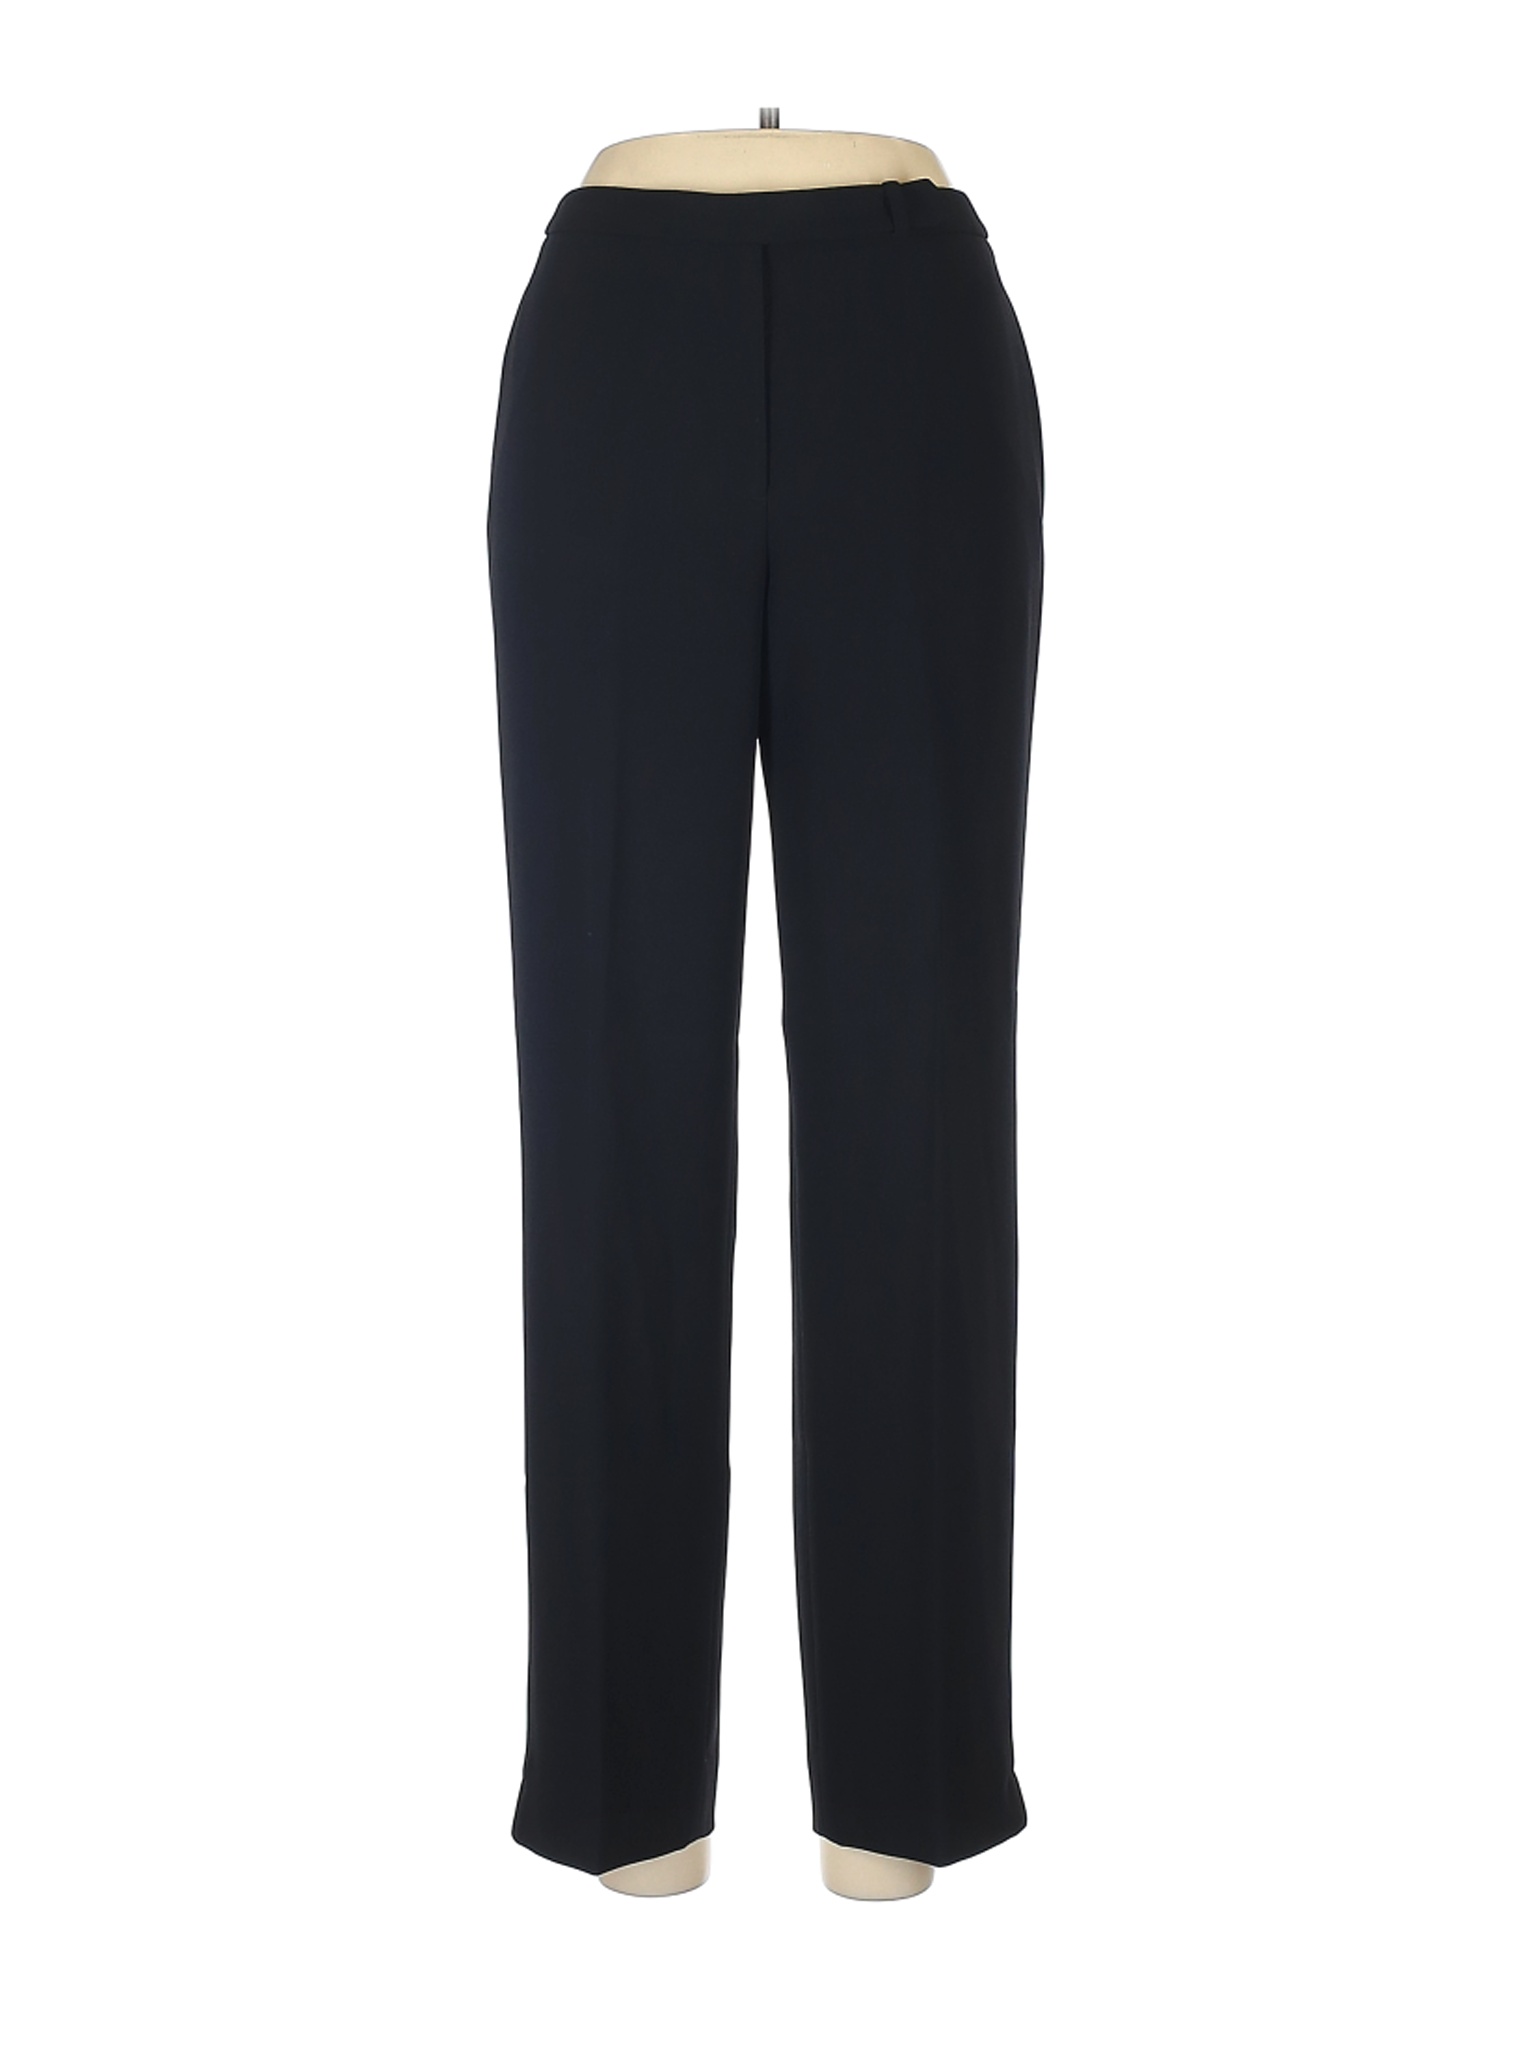 Ann Taylor Women Black Dress Pants 6 | eBay